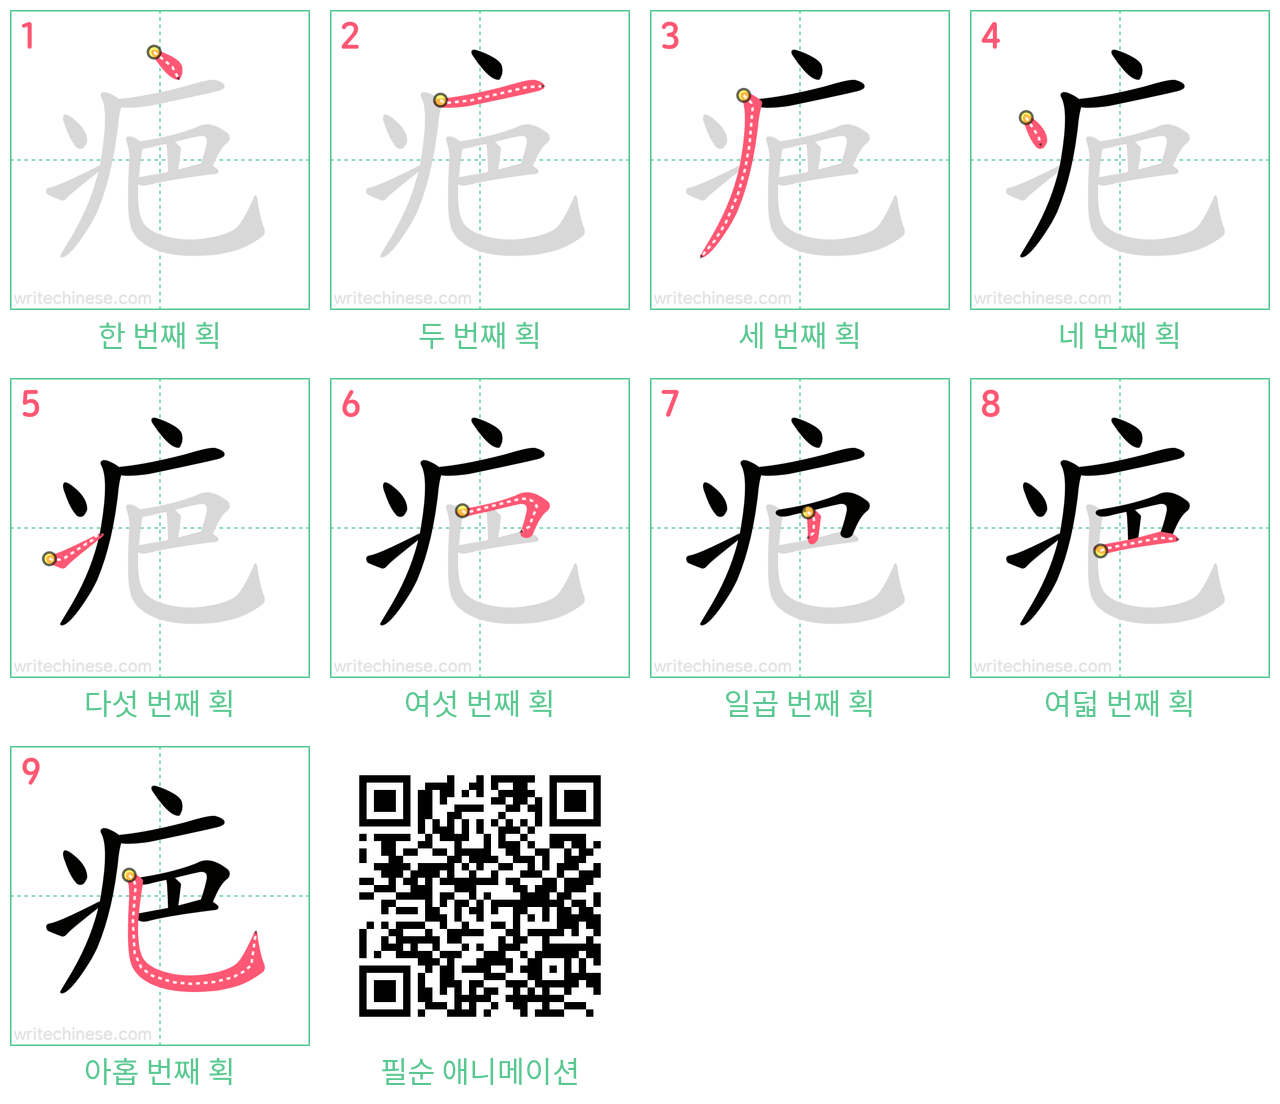 疤 step-by-step stroke order diagrams